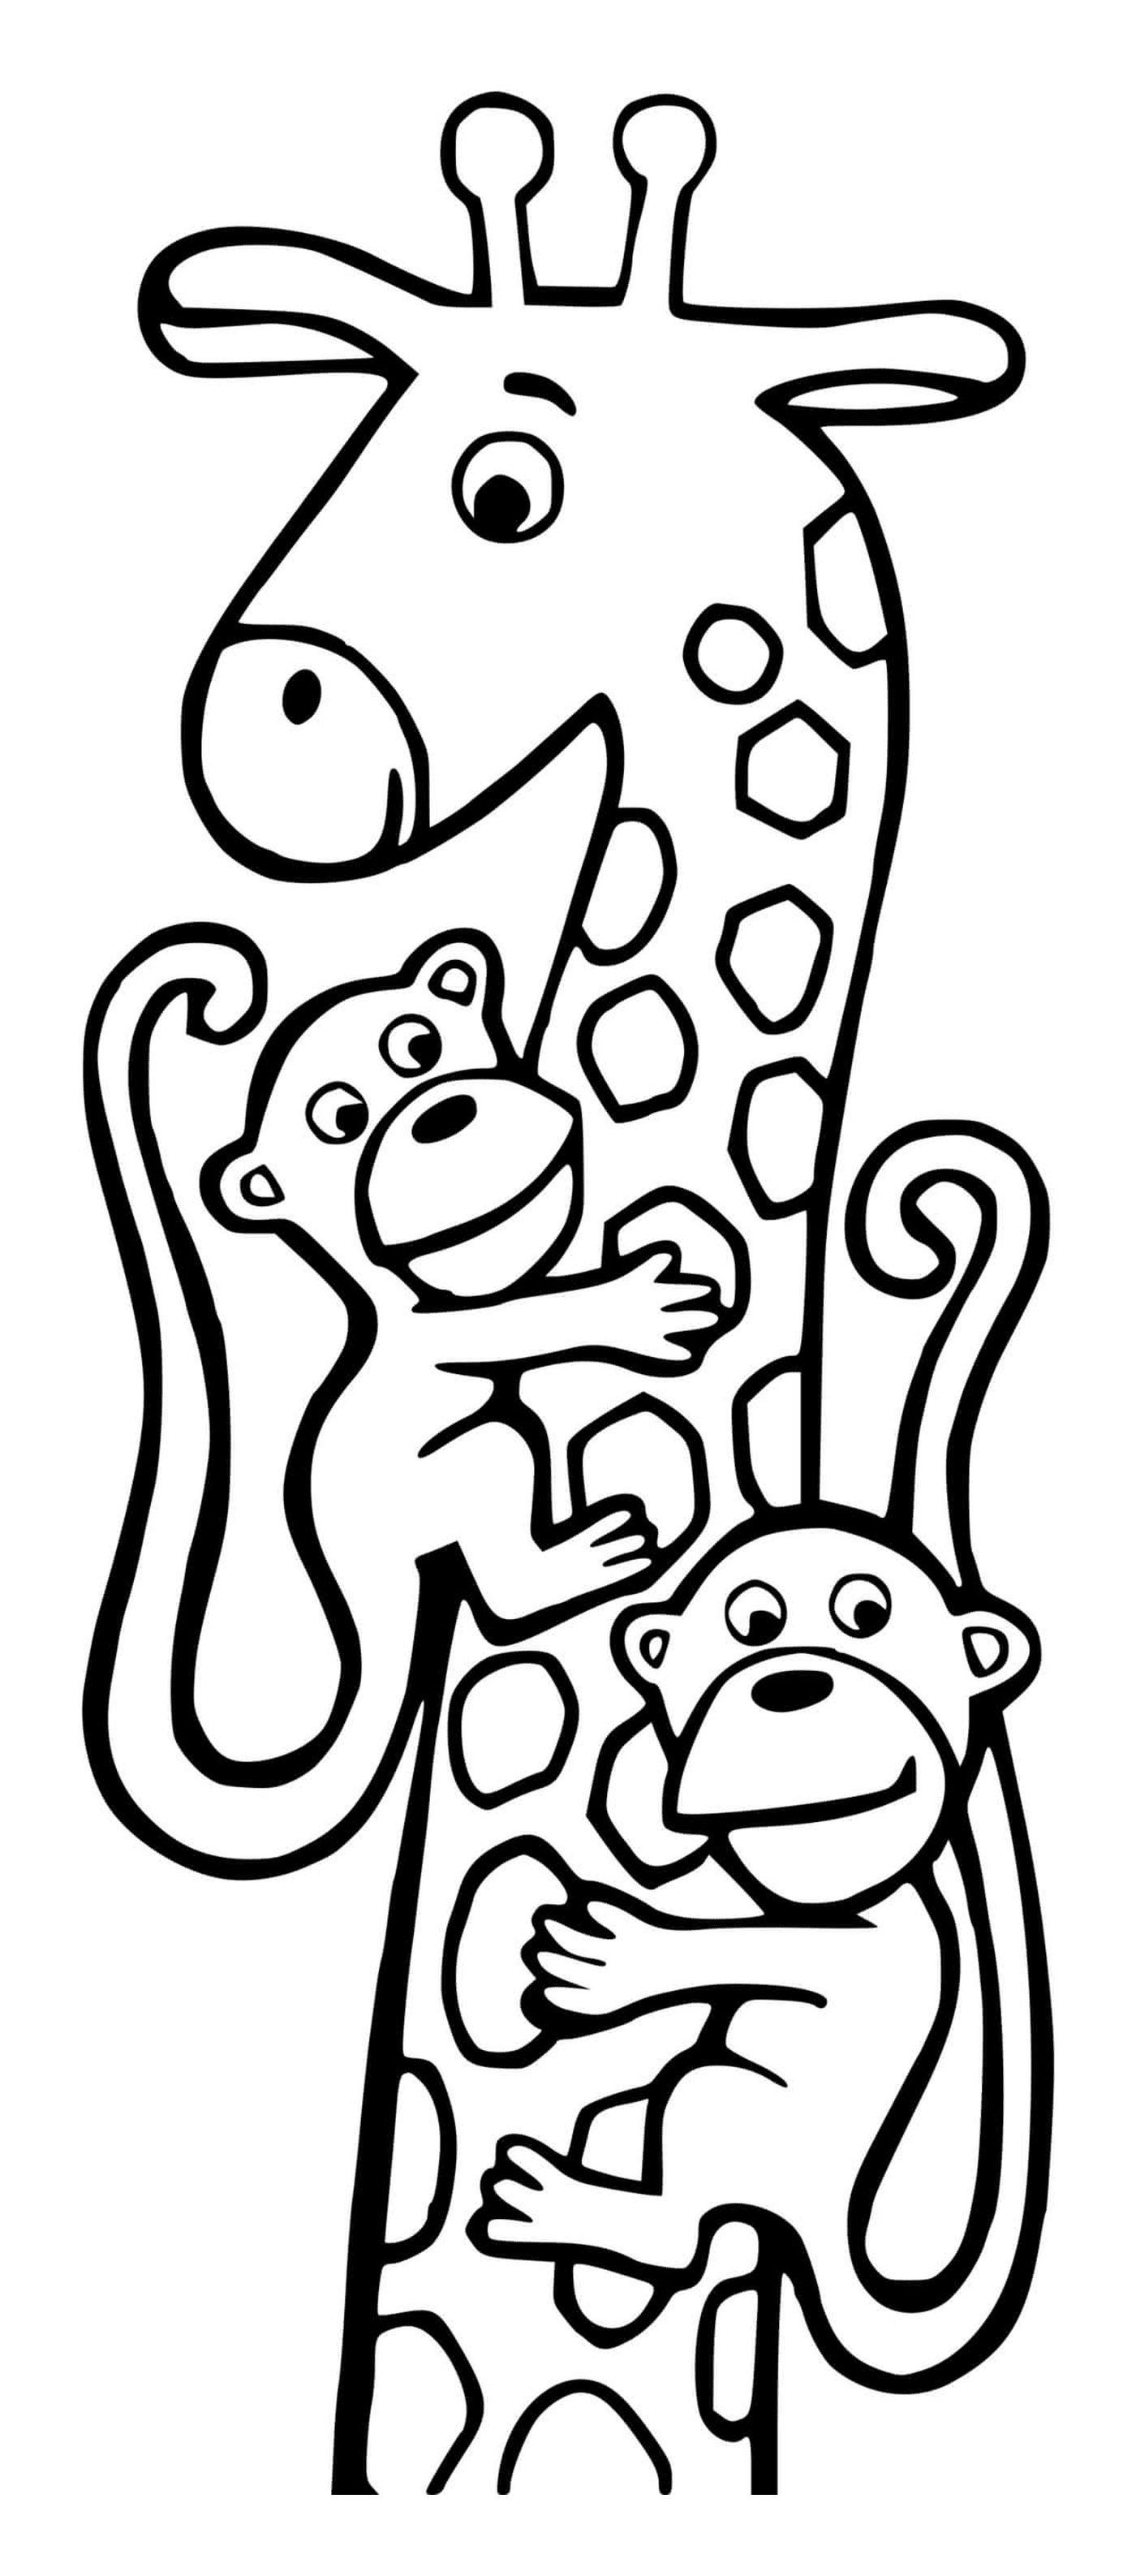  Гирафе и две обезьяны 